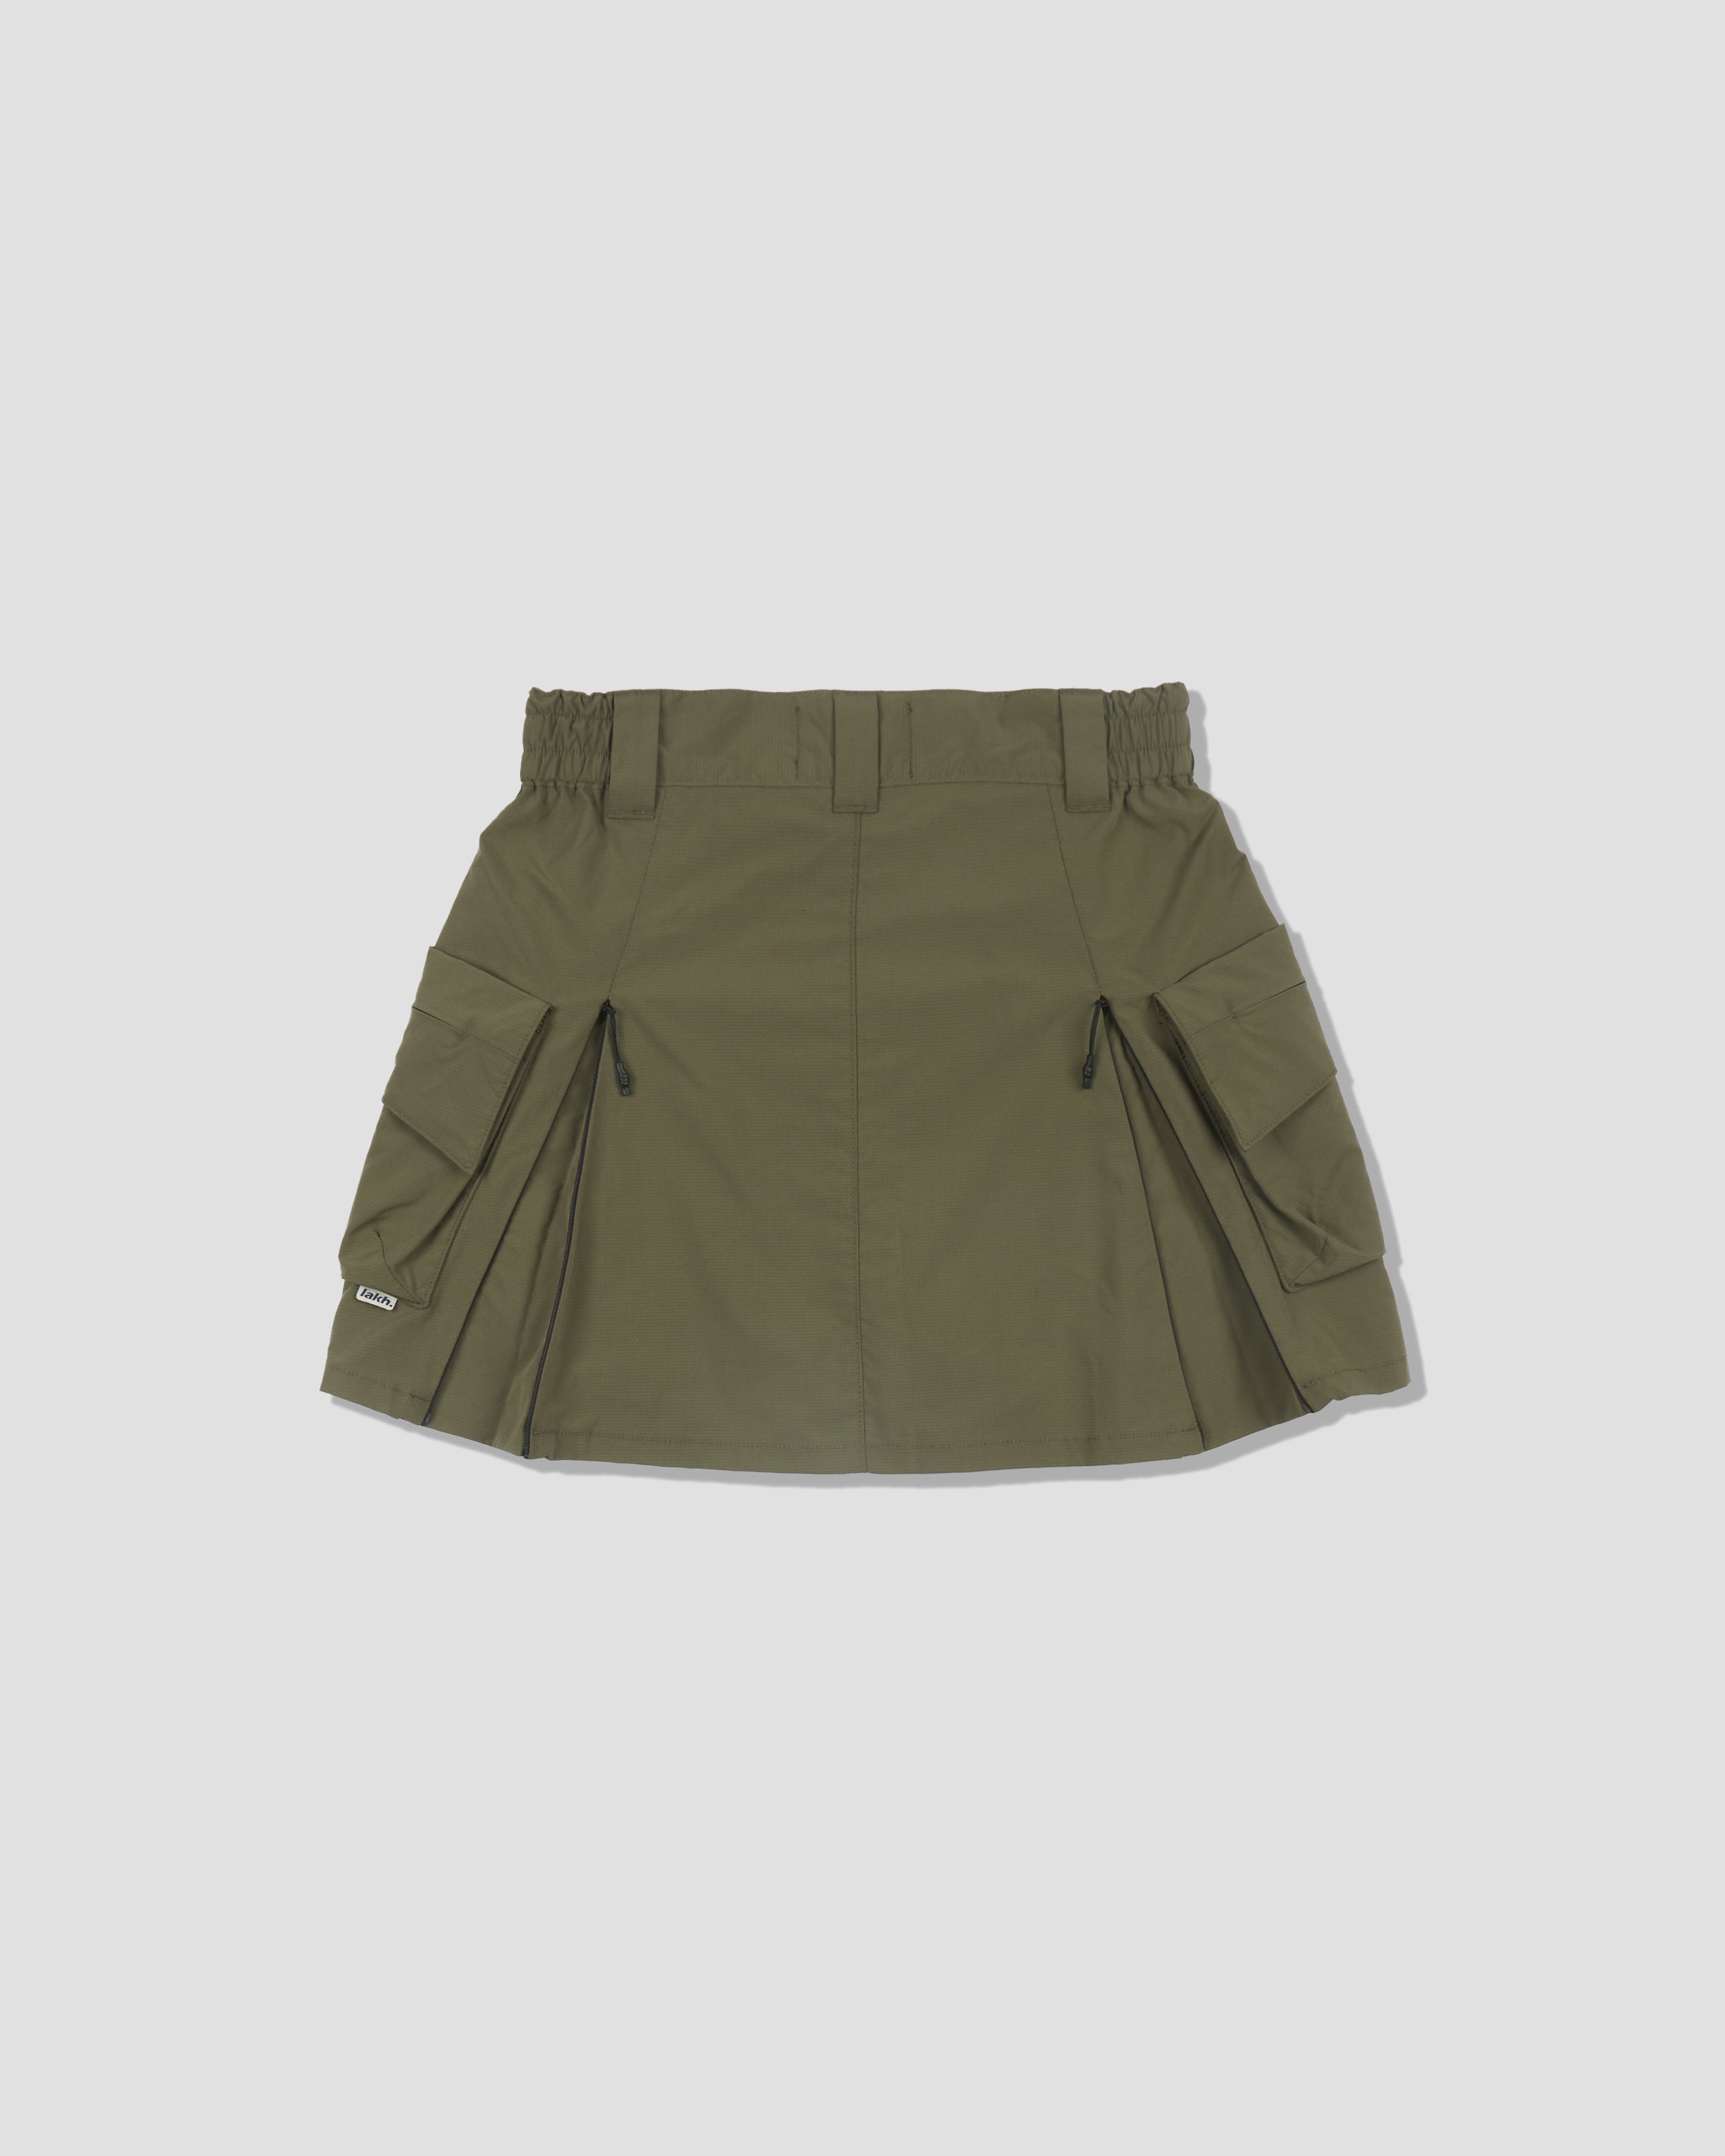 Cargo Mini Skirt - Olive